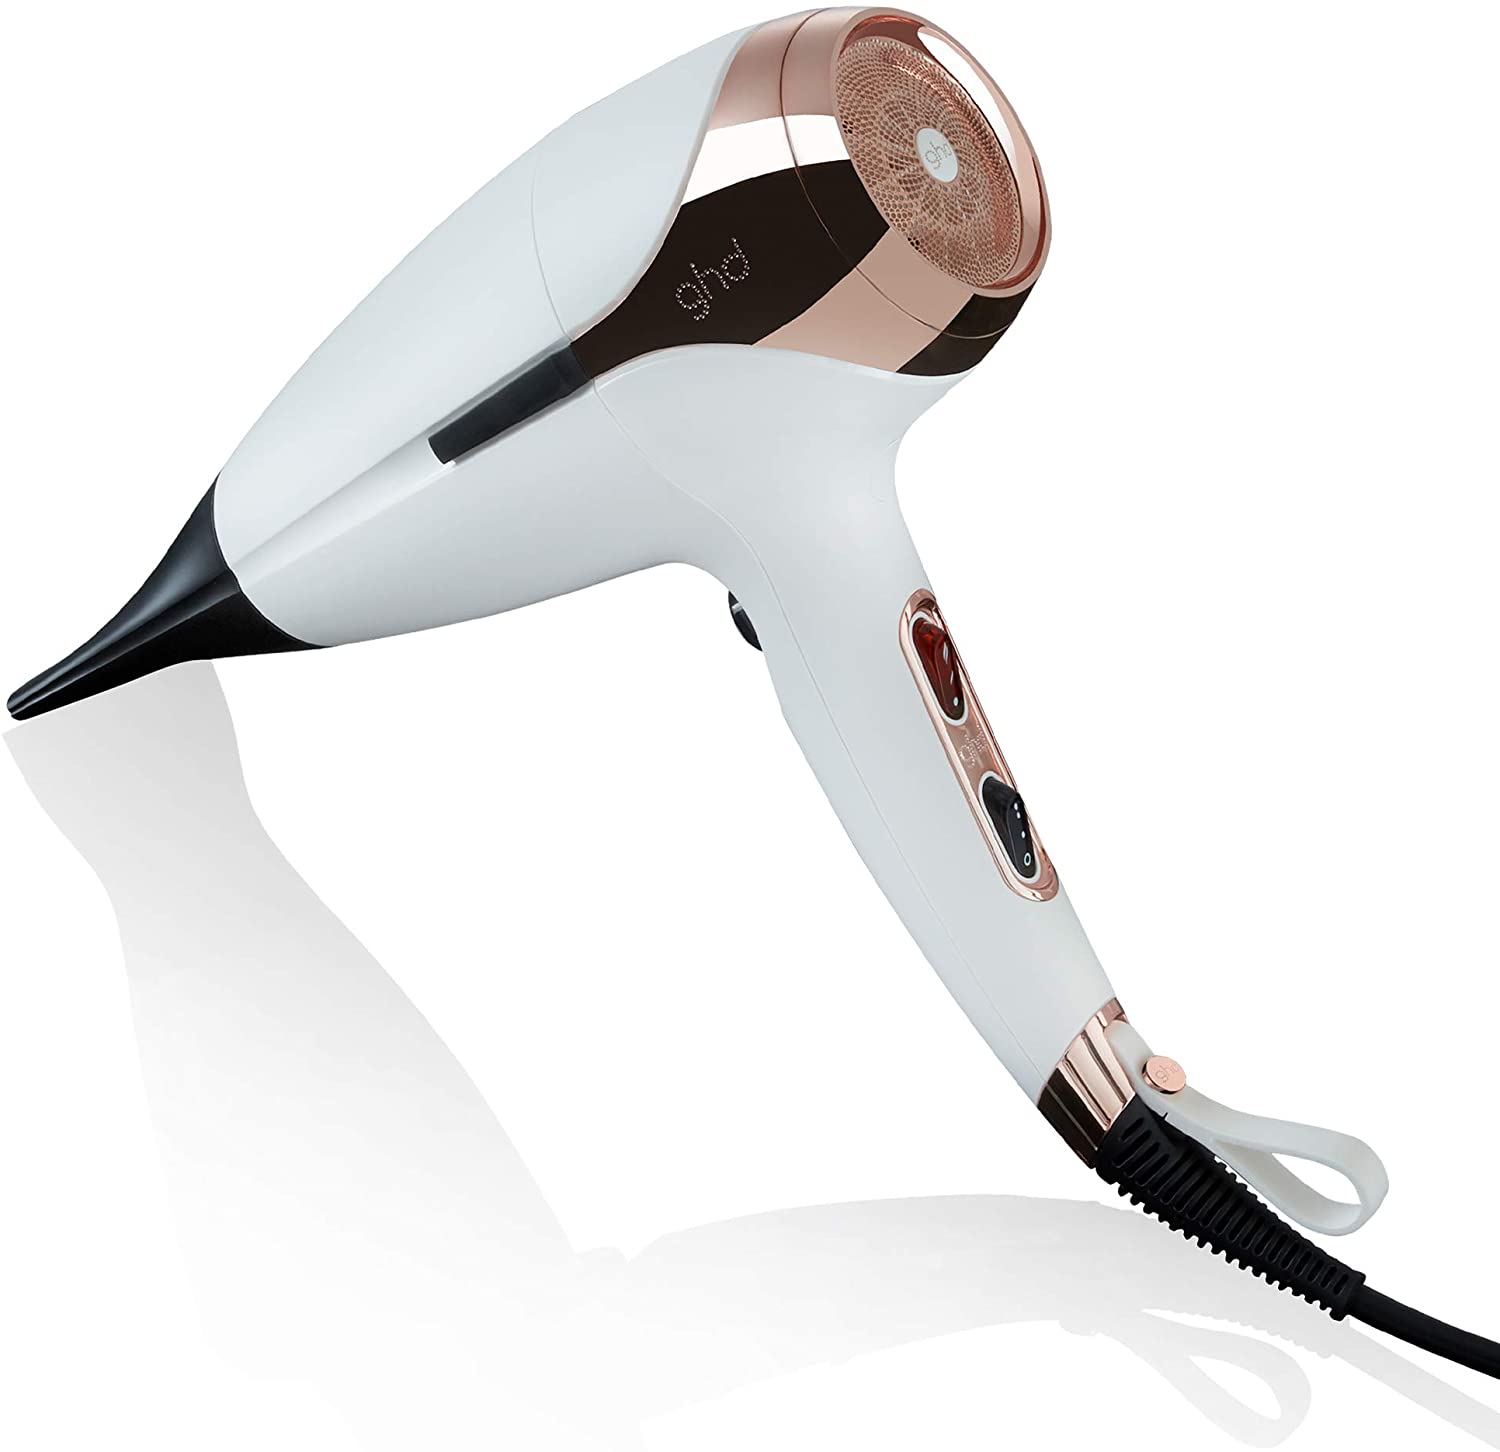 Asciugacapelli professionale con Tecnologia Aeroprecis